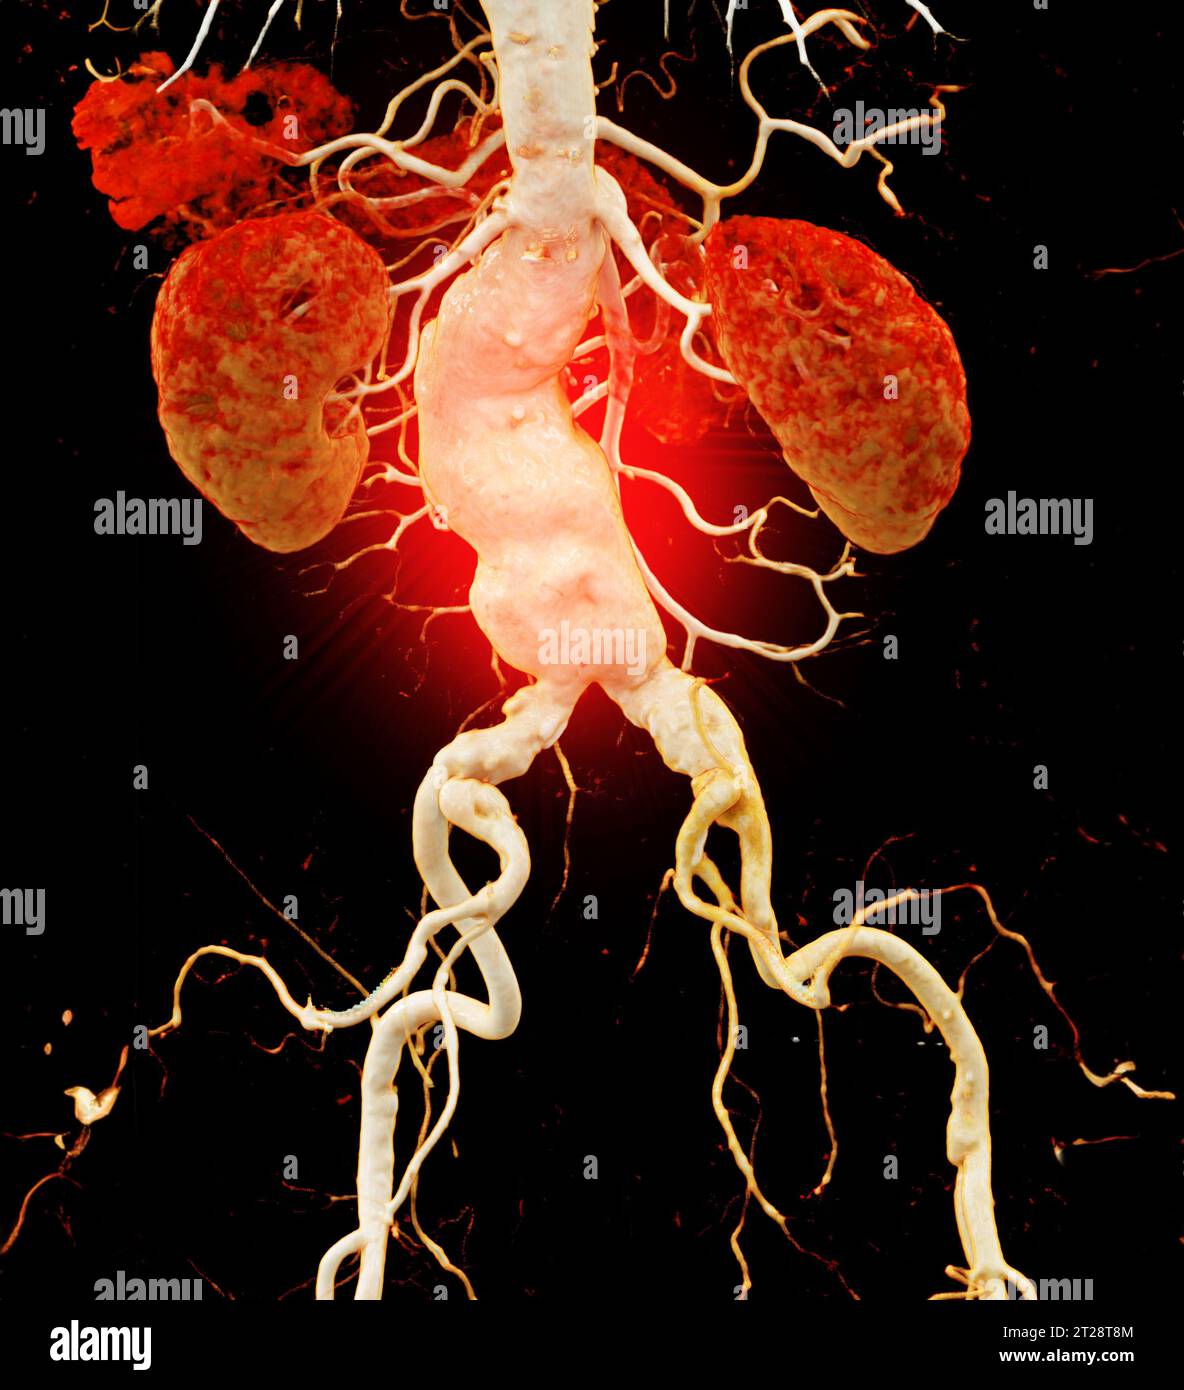 CTA aorte abdominale montrant un rendu 3D de dissection aortique abdominale. Banque D'Images